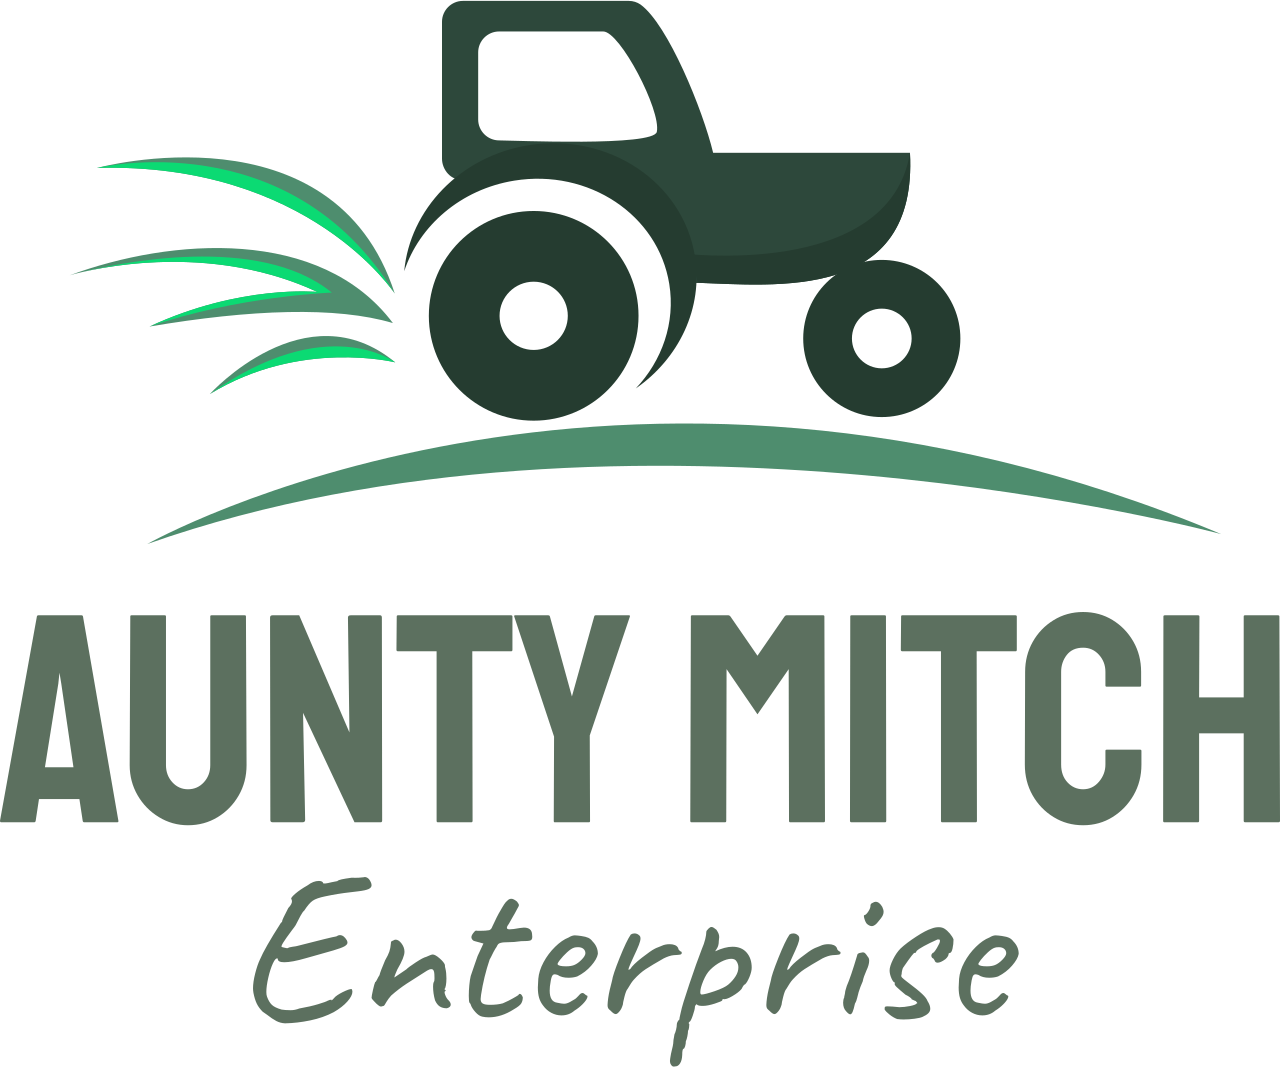 Aunty mitch's web page